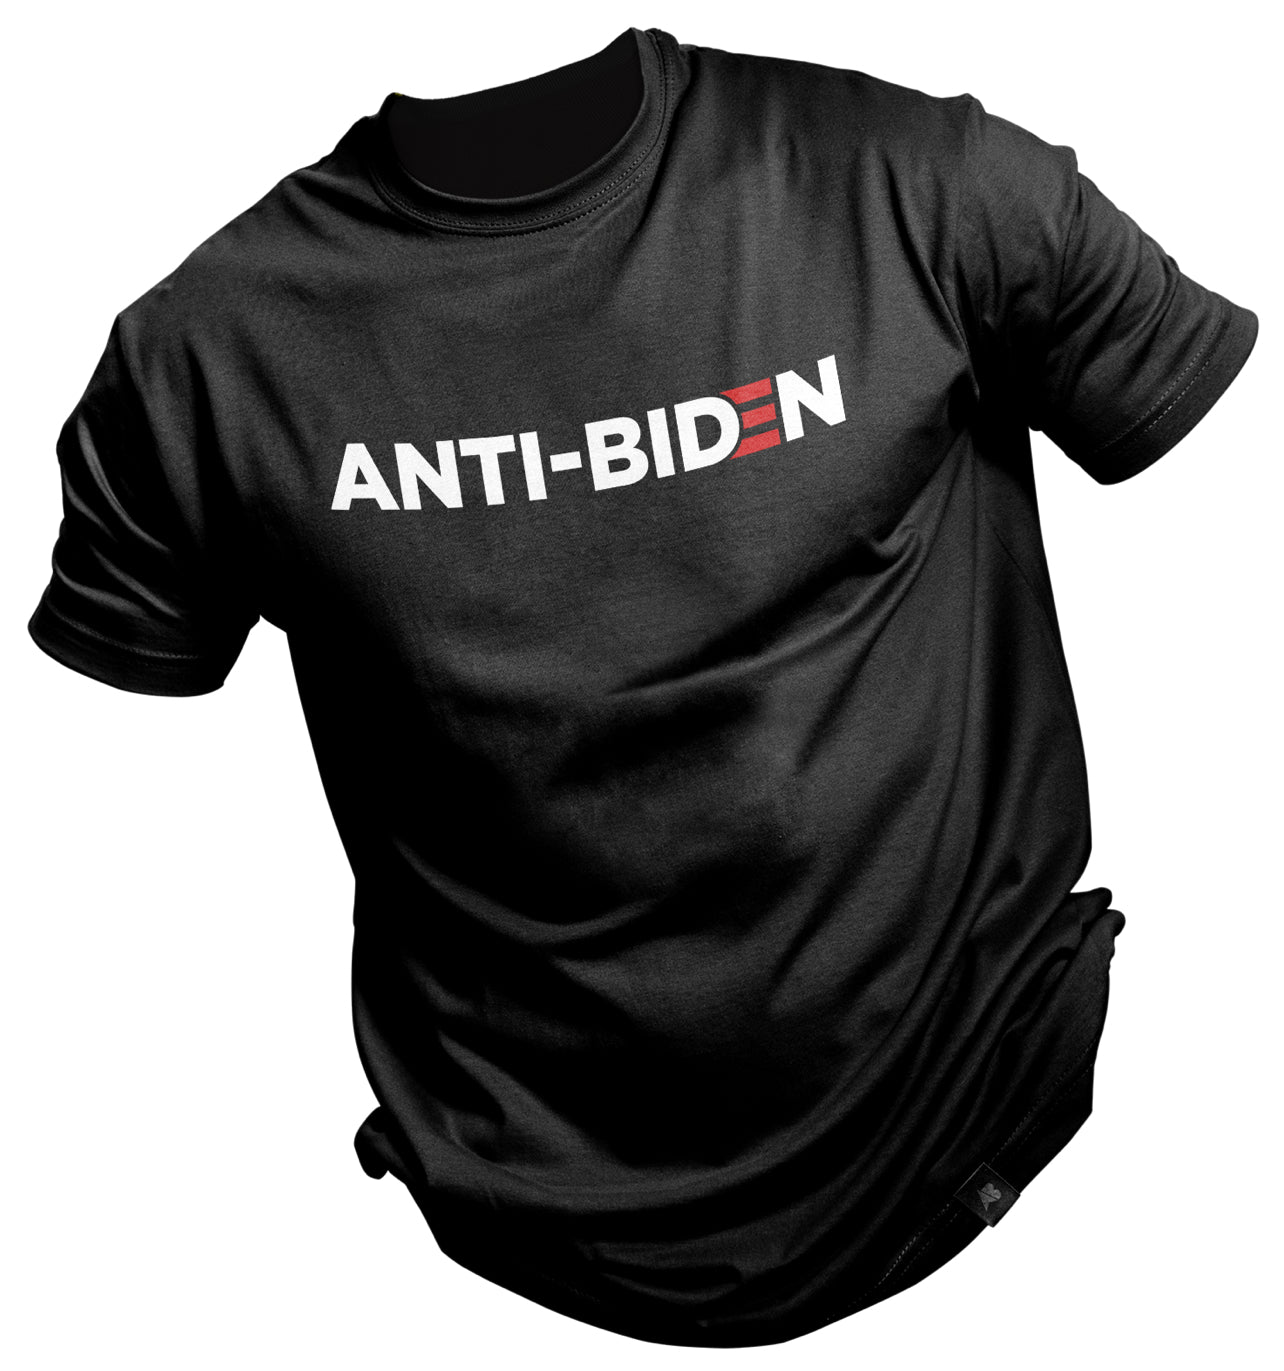 Anti-Biden!